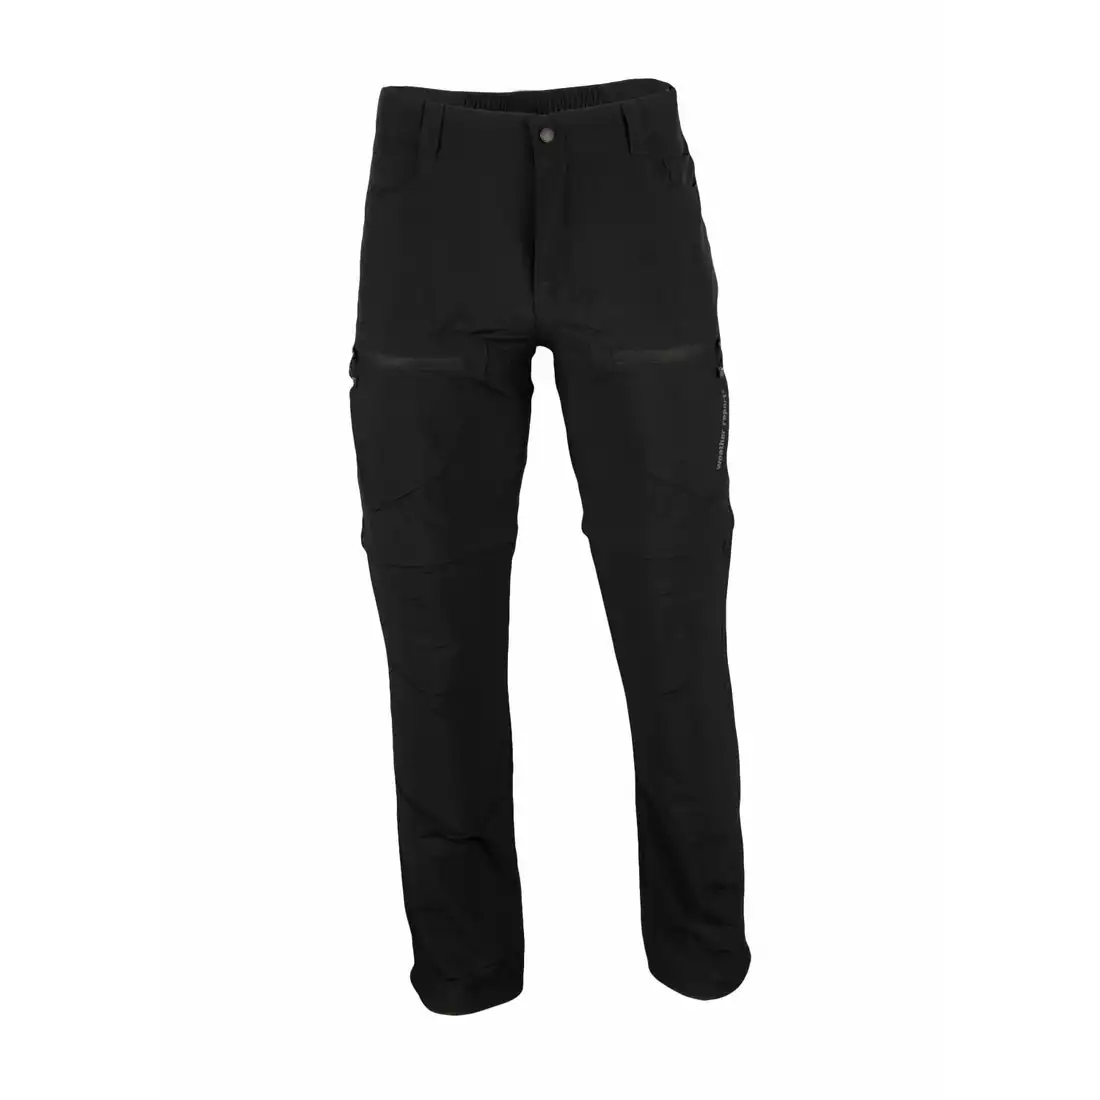 WEATHER REPORT - KLAUDIA -  damskie spodnie sportowe z odpinaną nogawką, czarne